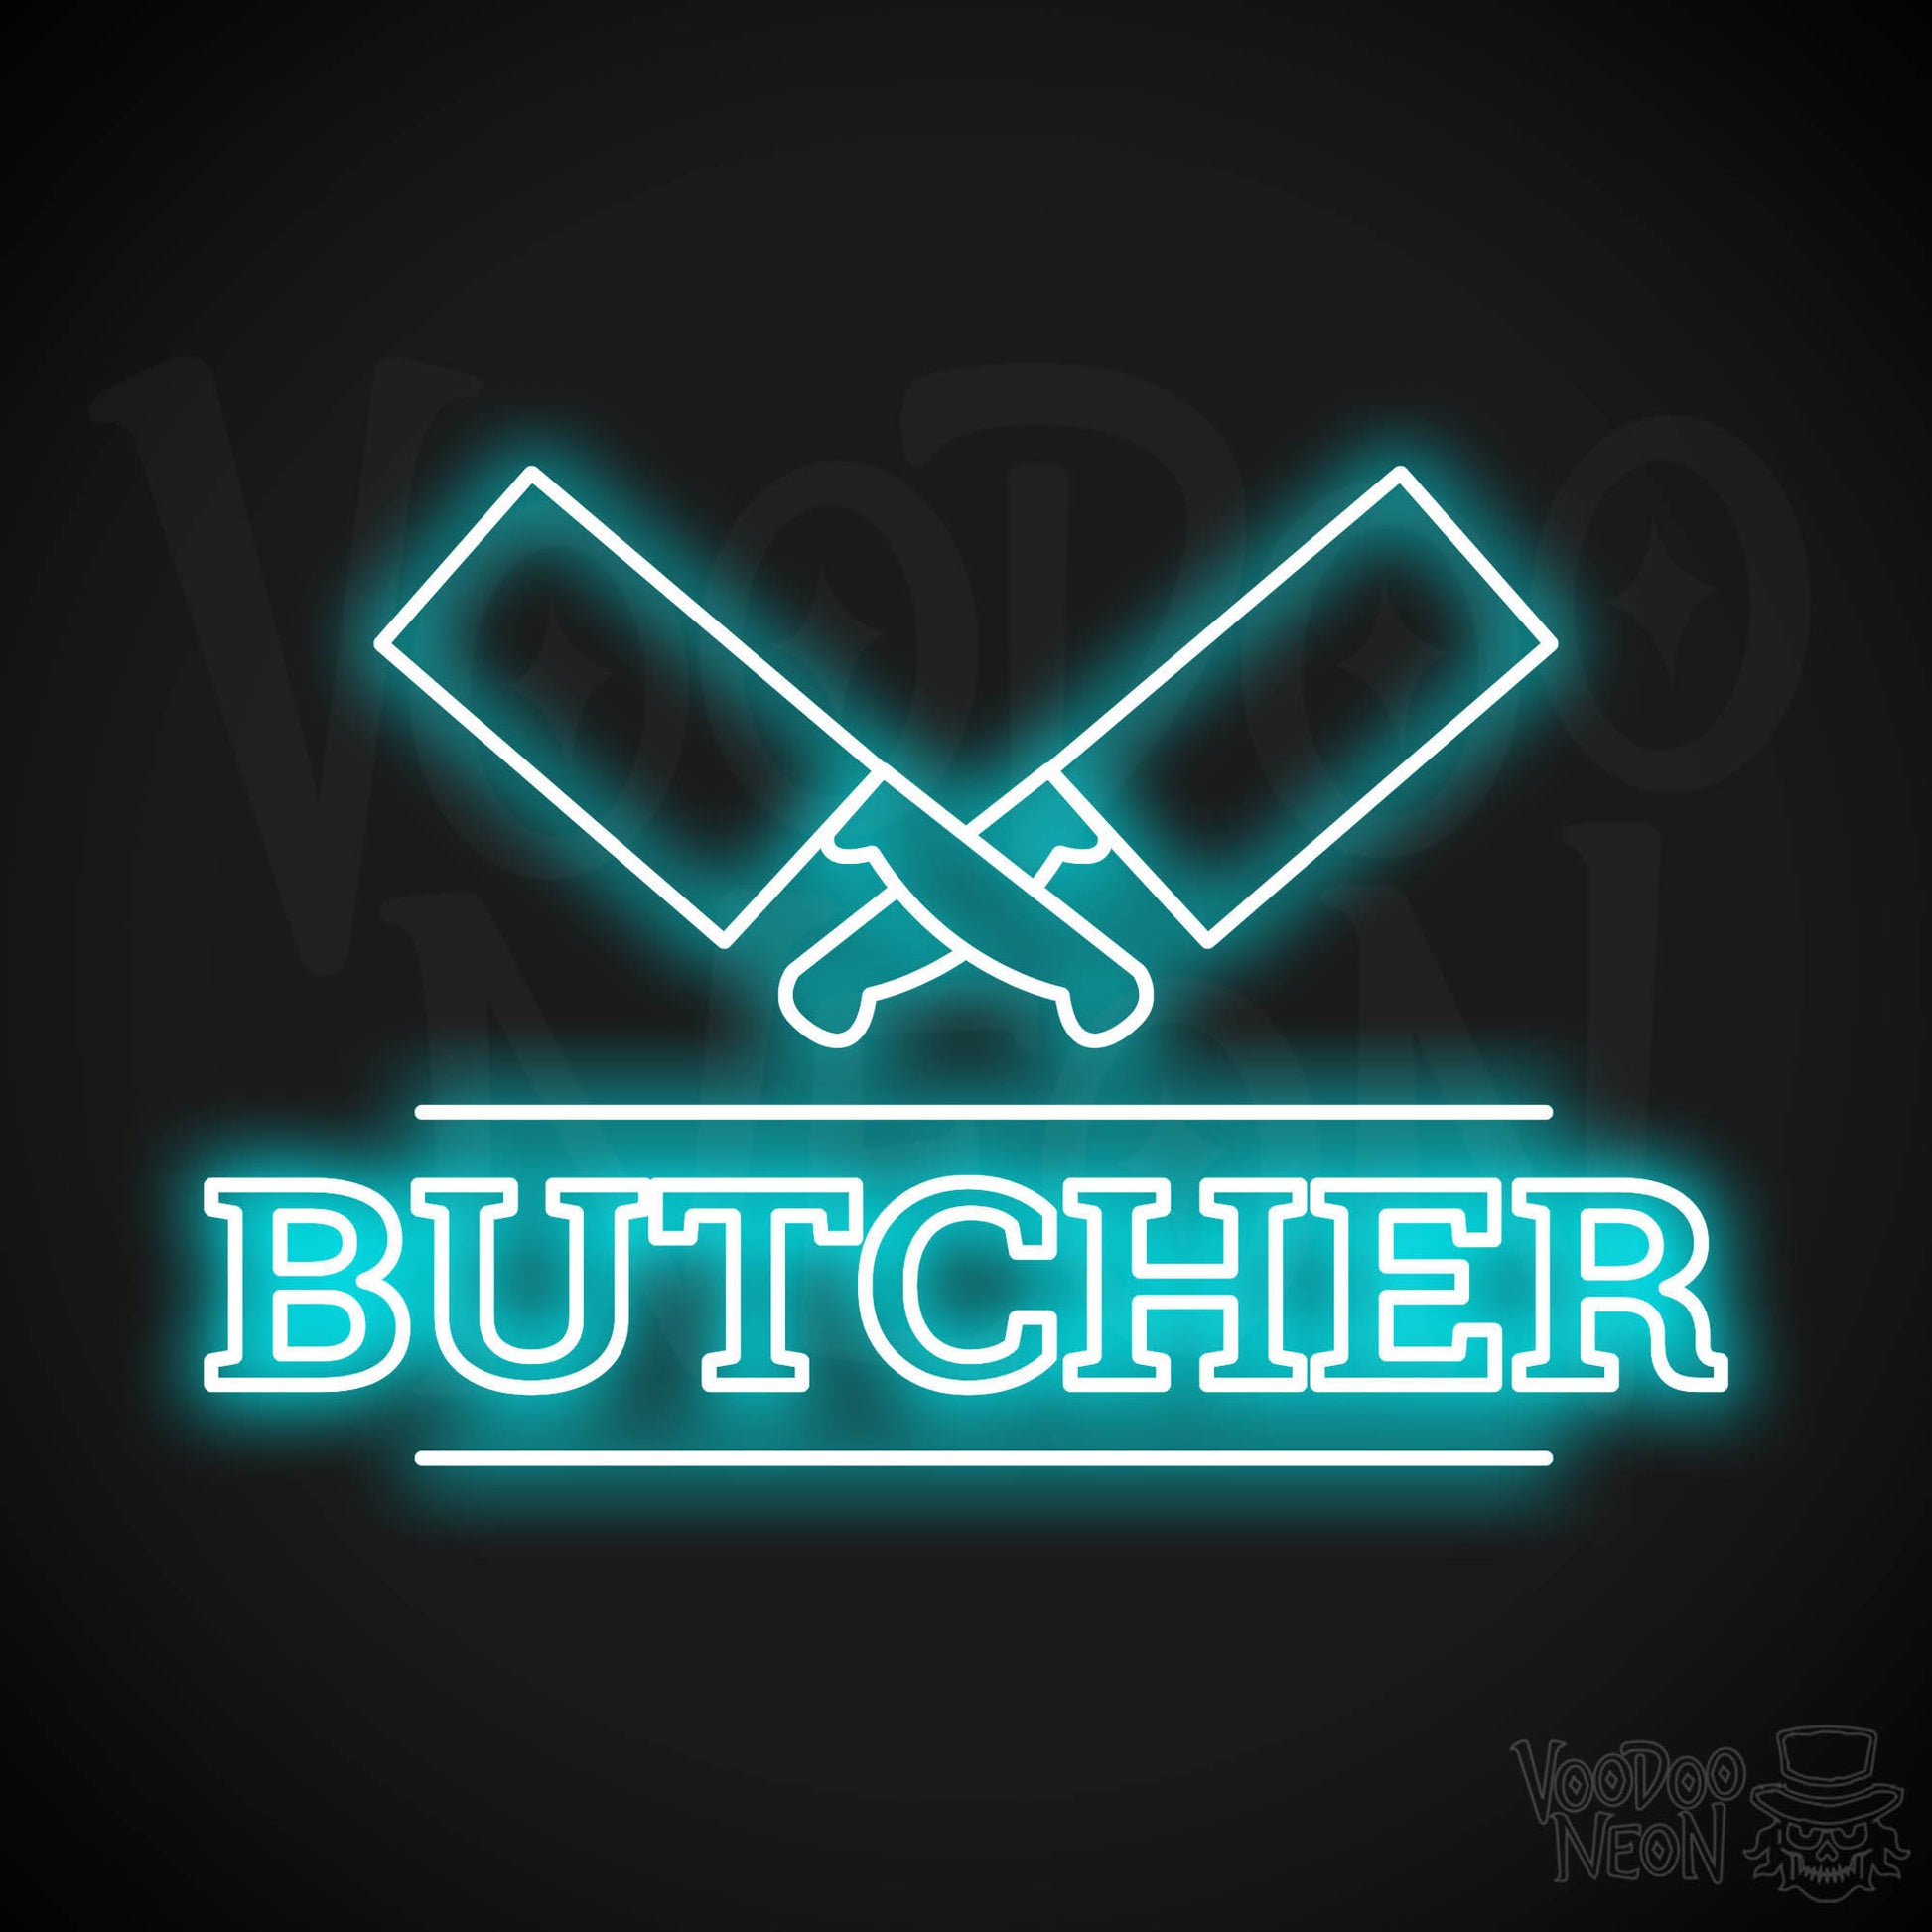 Butcher Shop LED Neon - Ice Blue